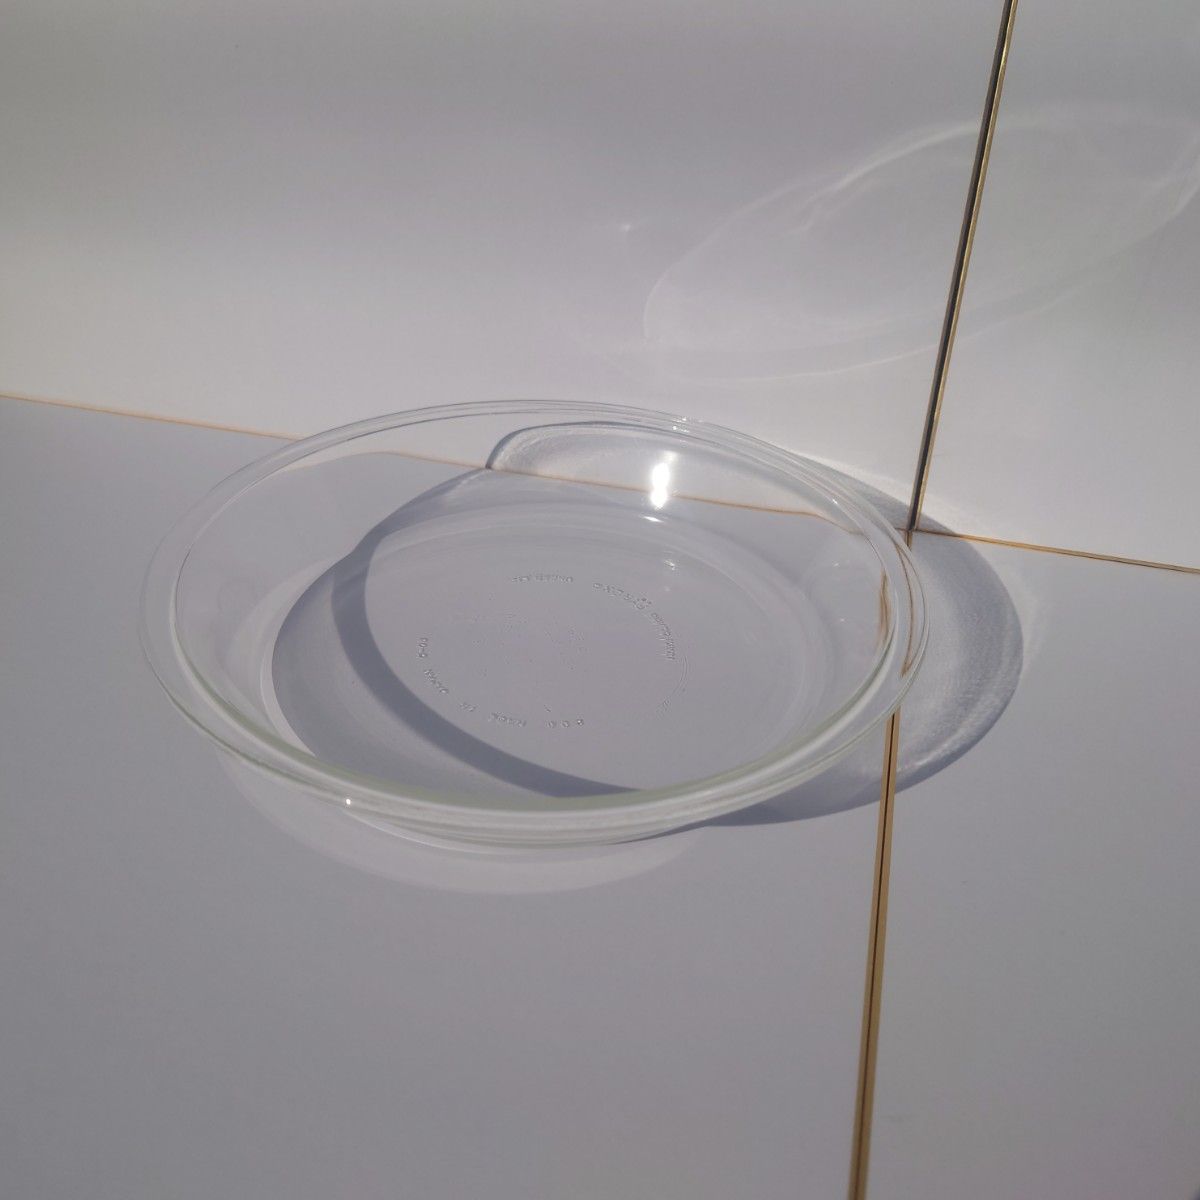 【未使用品】パイレックス パイ皿 23cm IWAKI PYREX 耐熱ガラス食器 MADE IN JAPAN